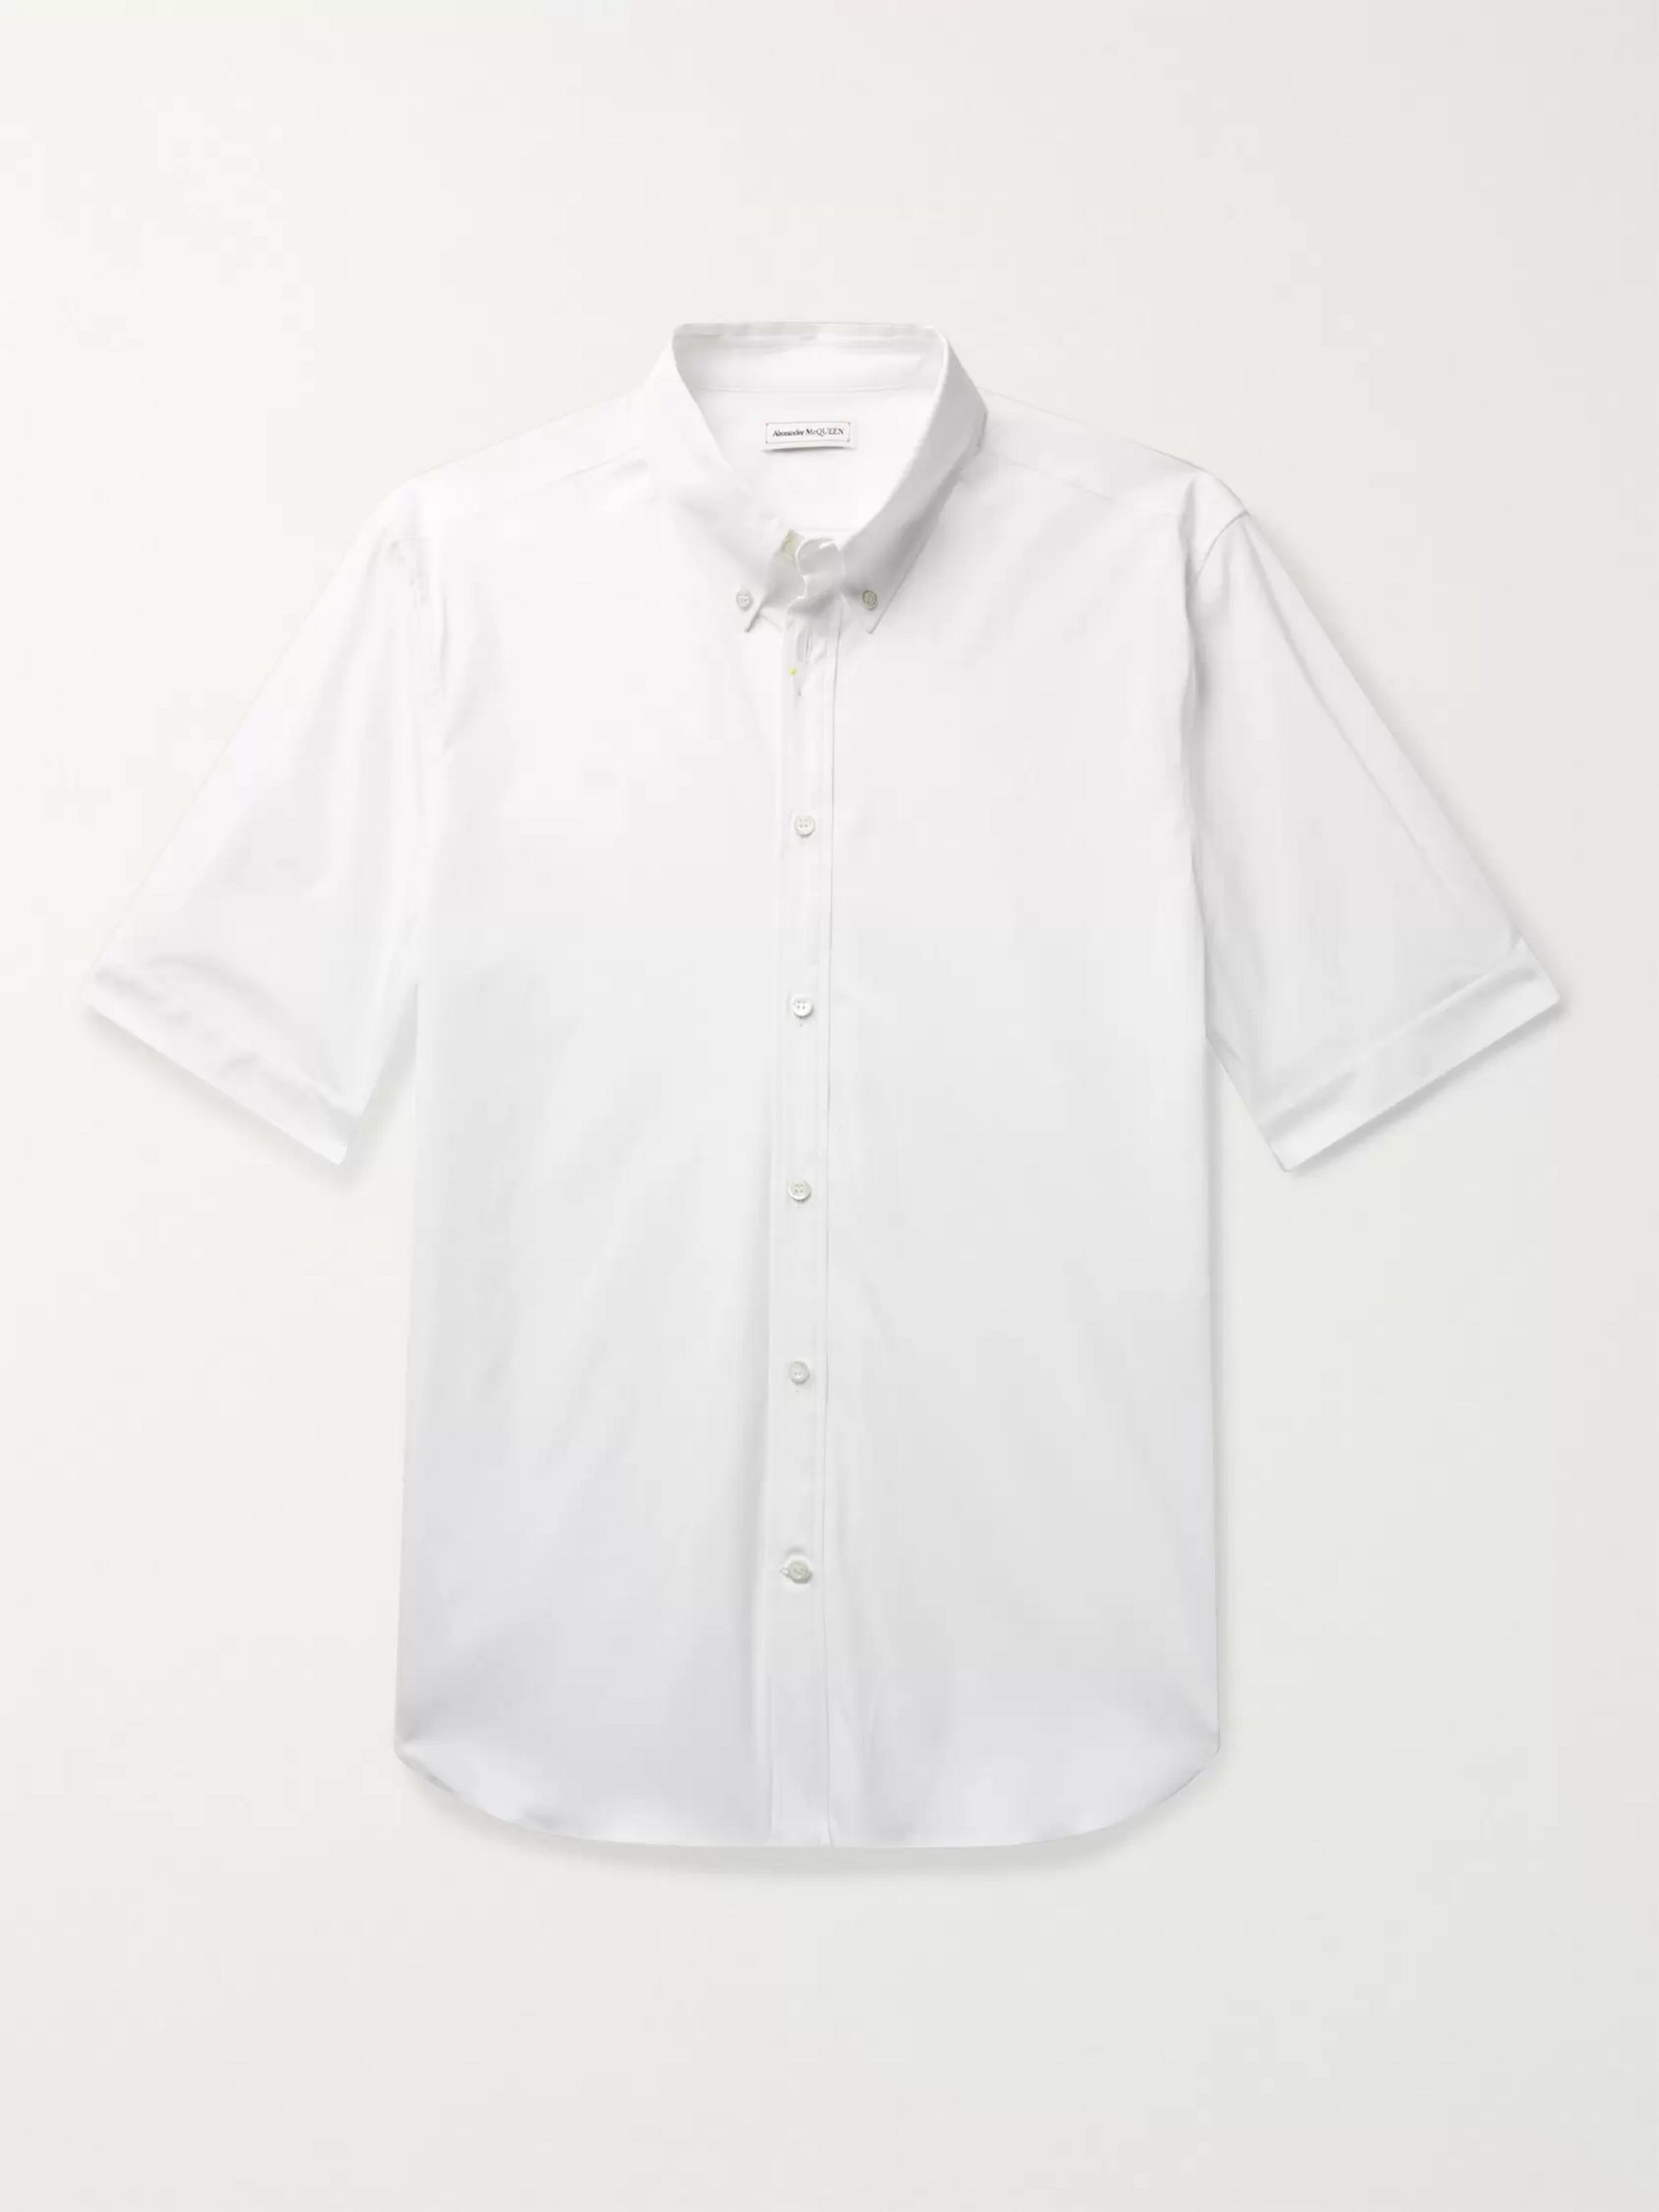 alexander mcqueen white shirt